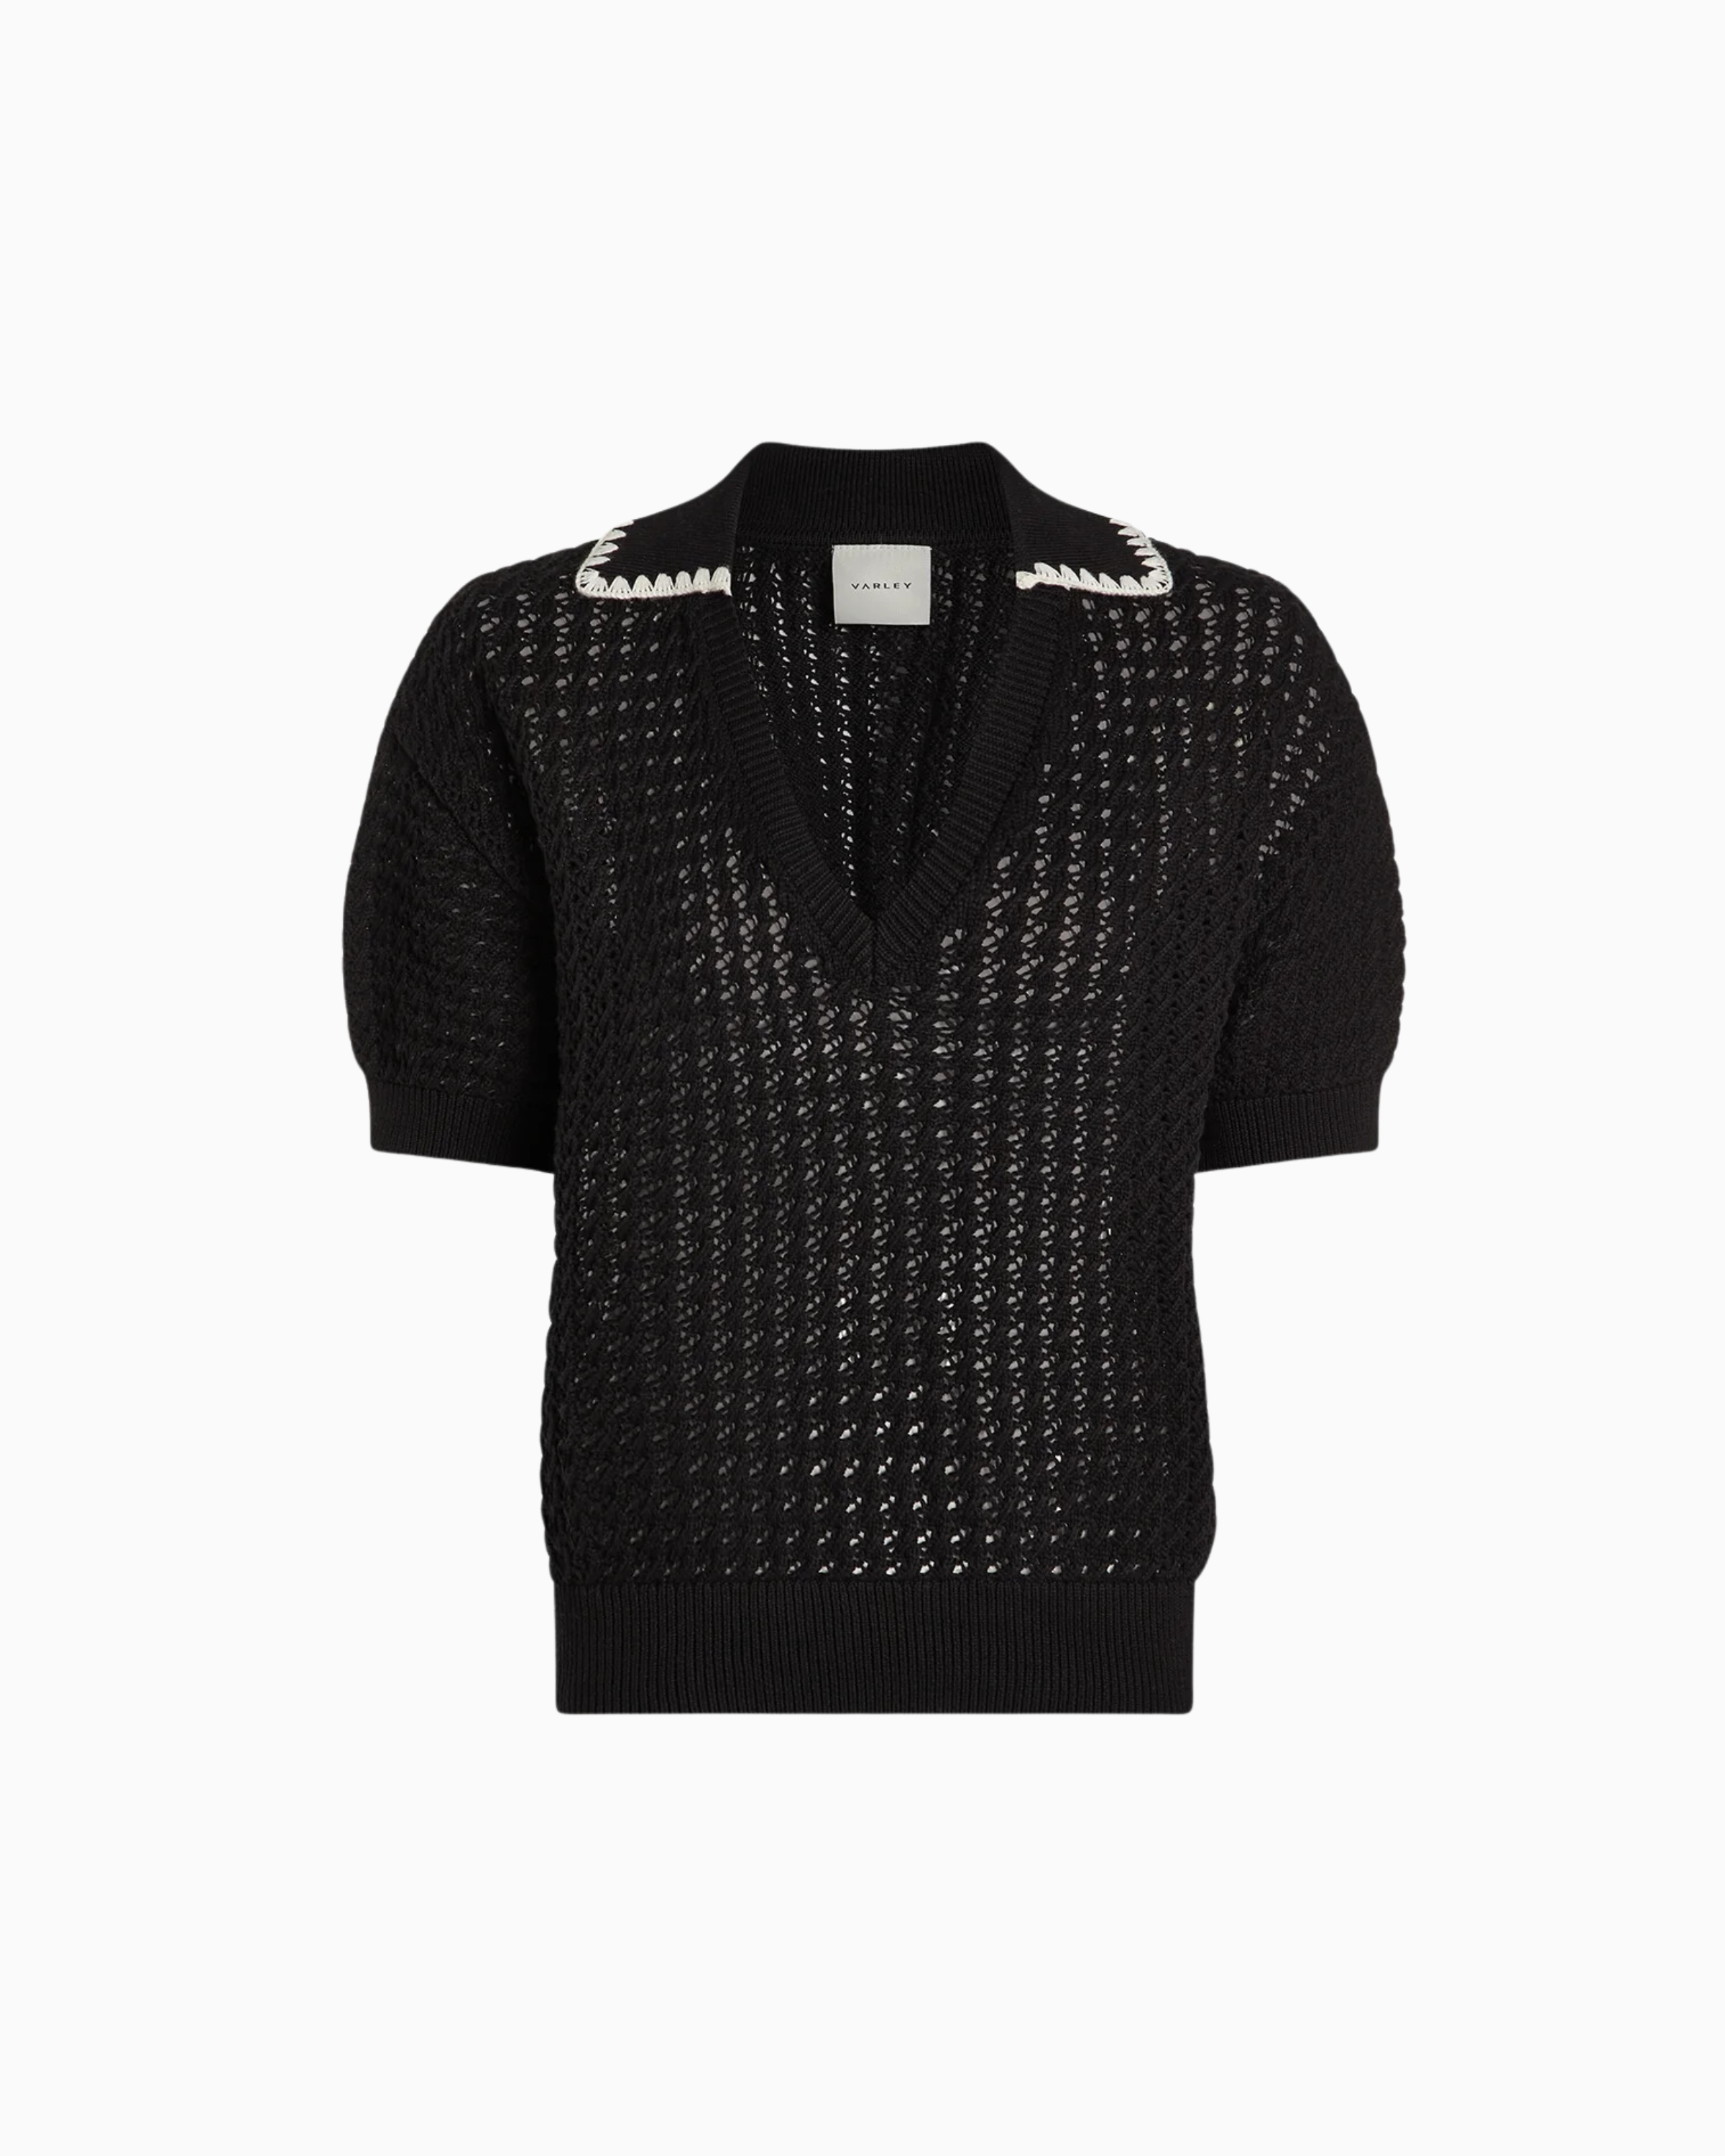 Varley Monte V-Neck Knit Polo in Black